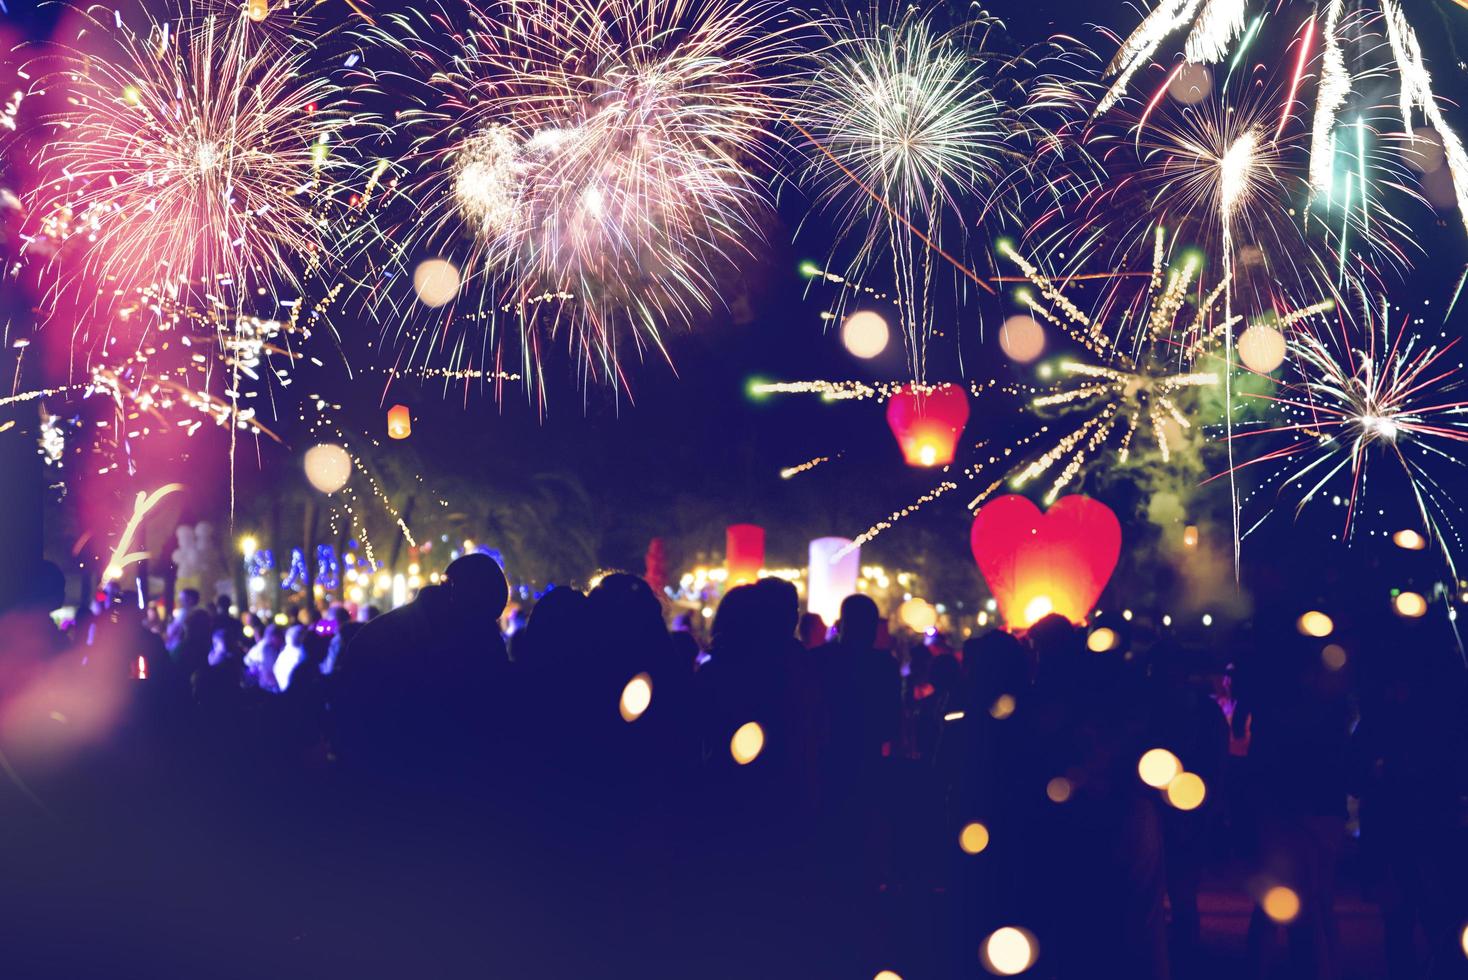 fuochi d'artificio con sagome di persone in una vacanza events.new anno fuochi d'artificio sulla spiaggia. i viaggiatori e le persone festeggiano il capodanno alla spiaggia di kamala phuket, in thailandia. foto